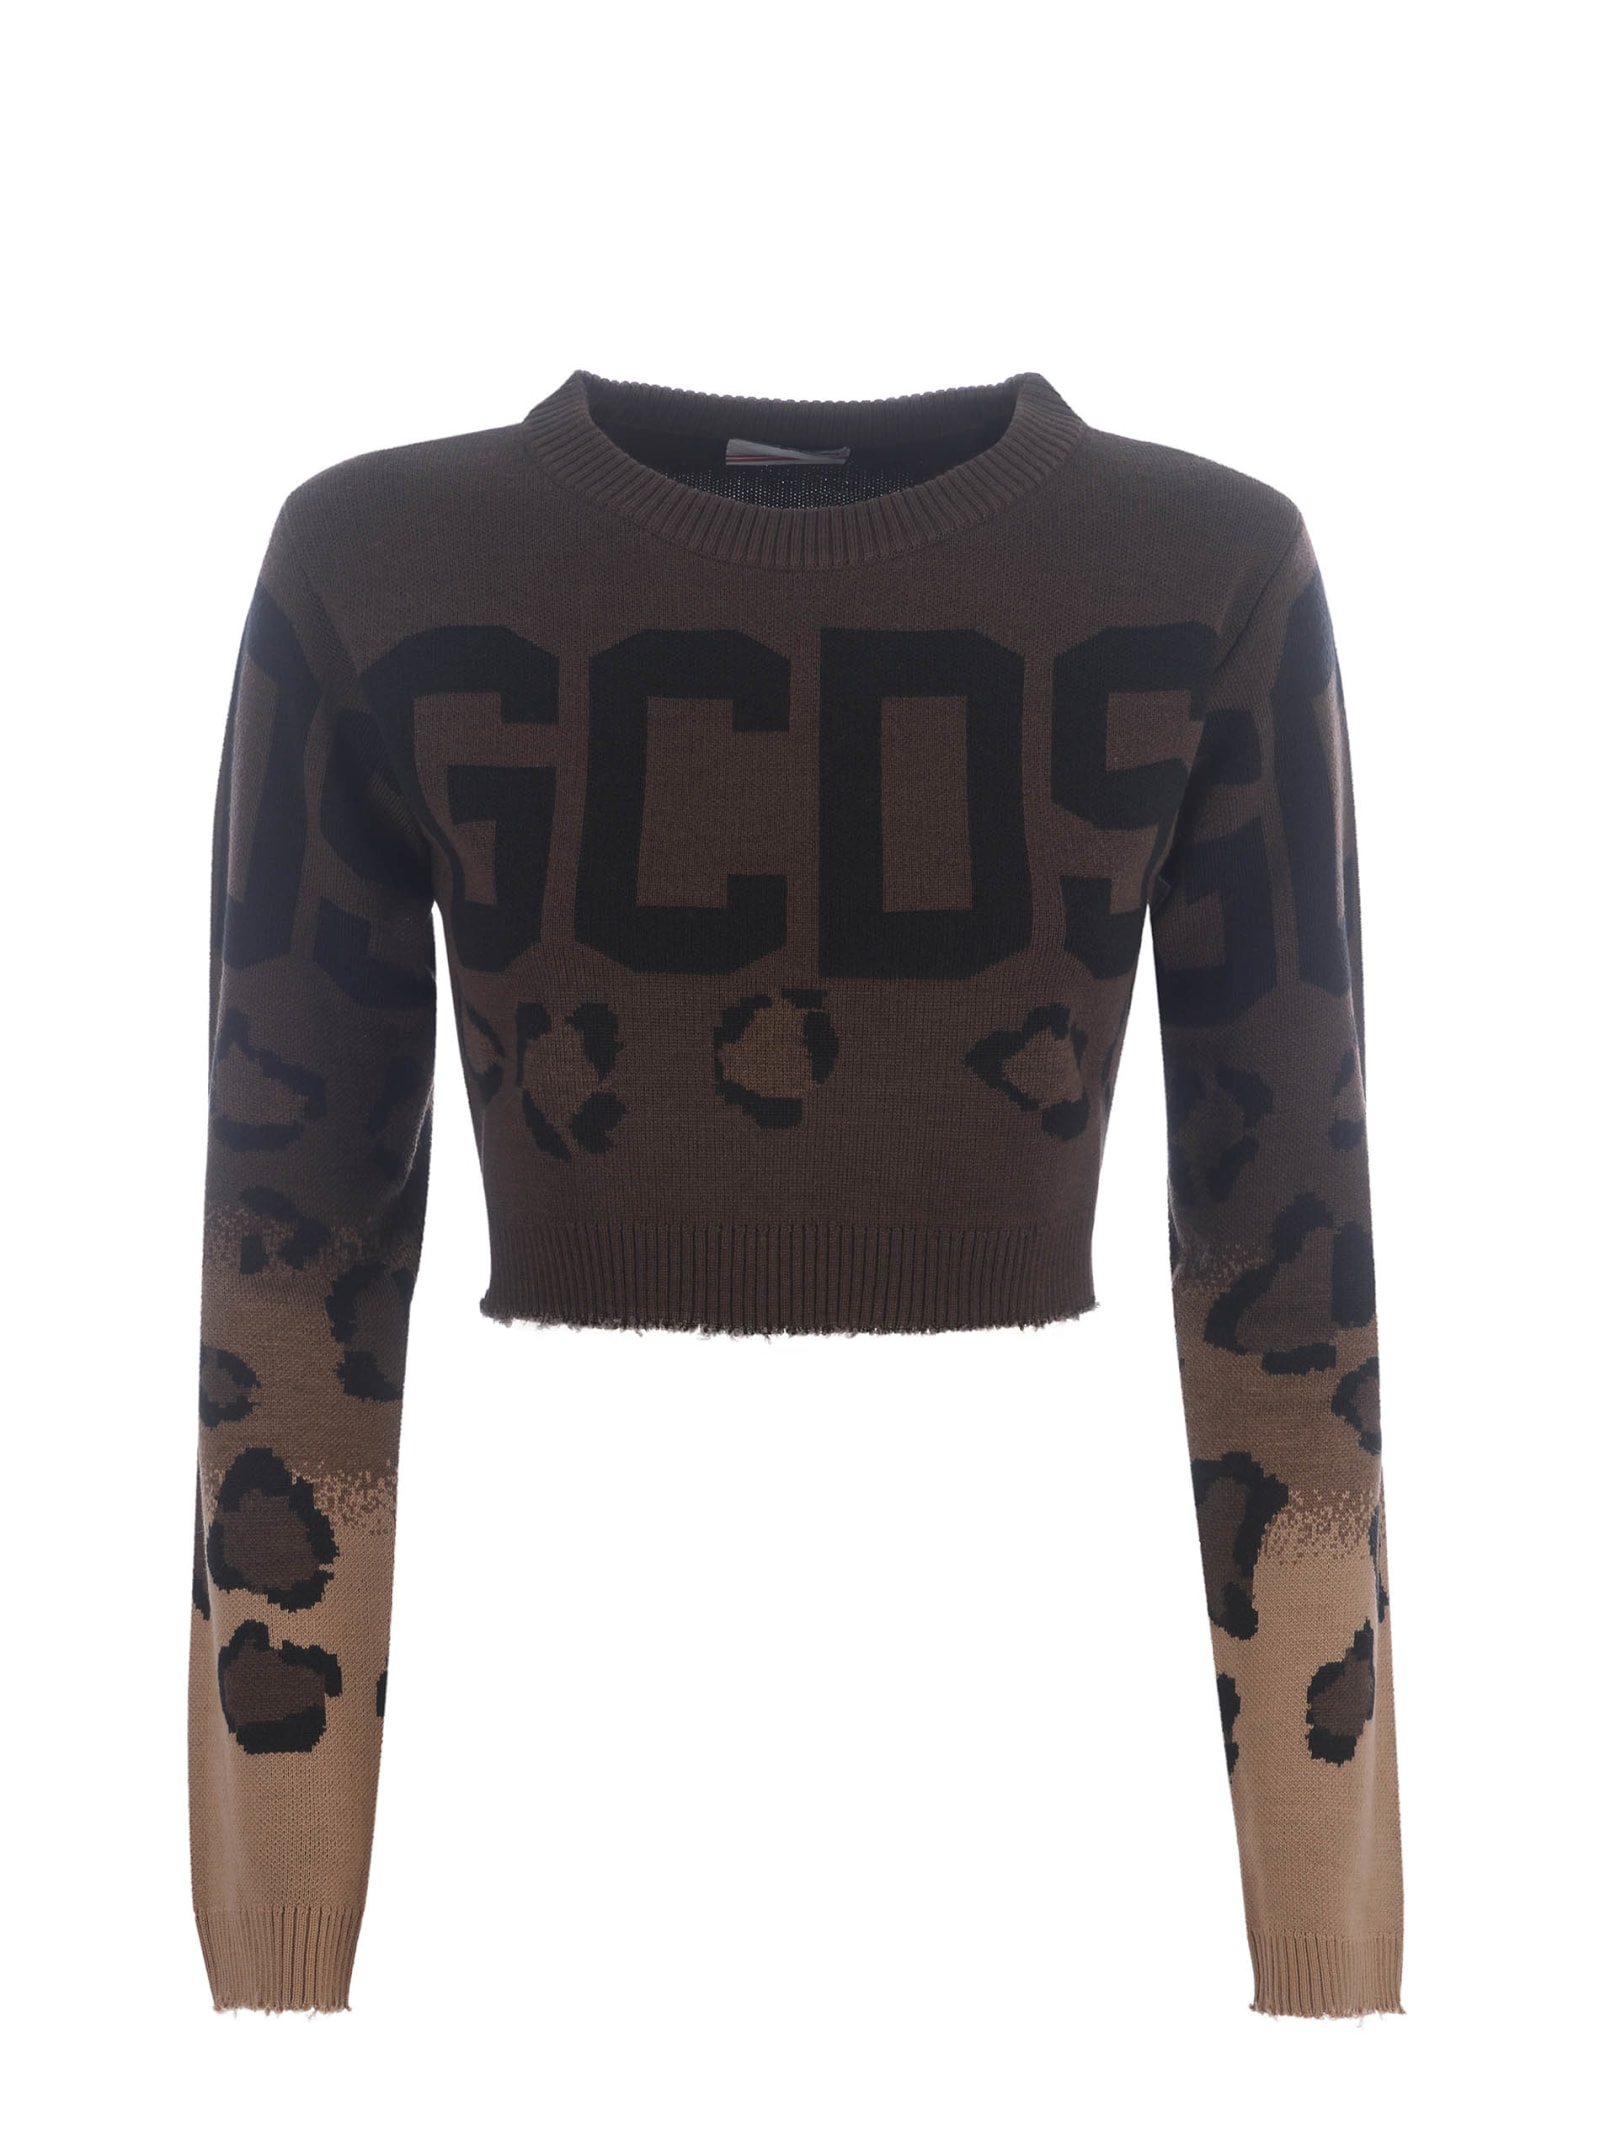 Sweater Cropped Gcds animalier In Wool Blend